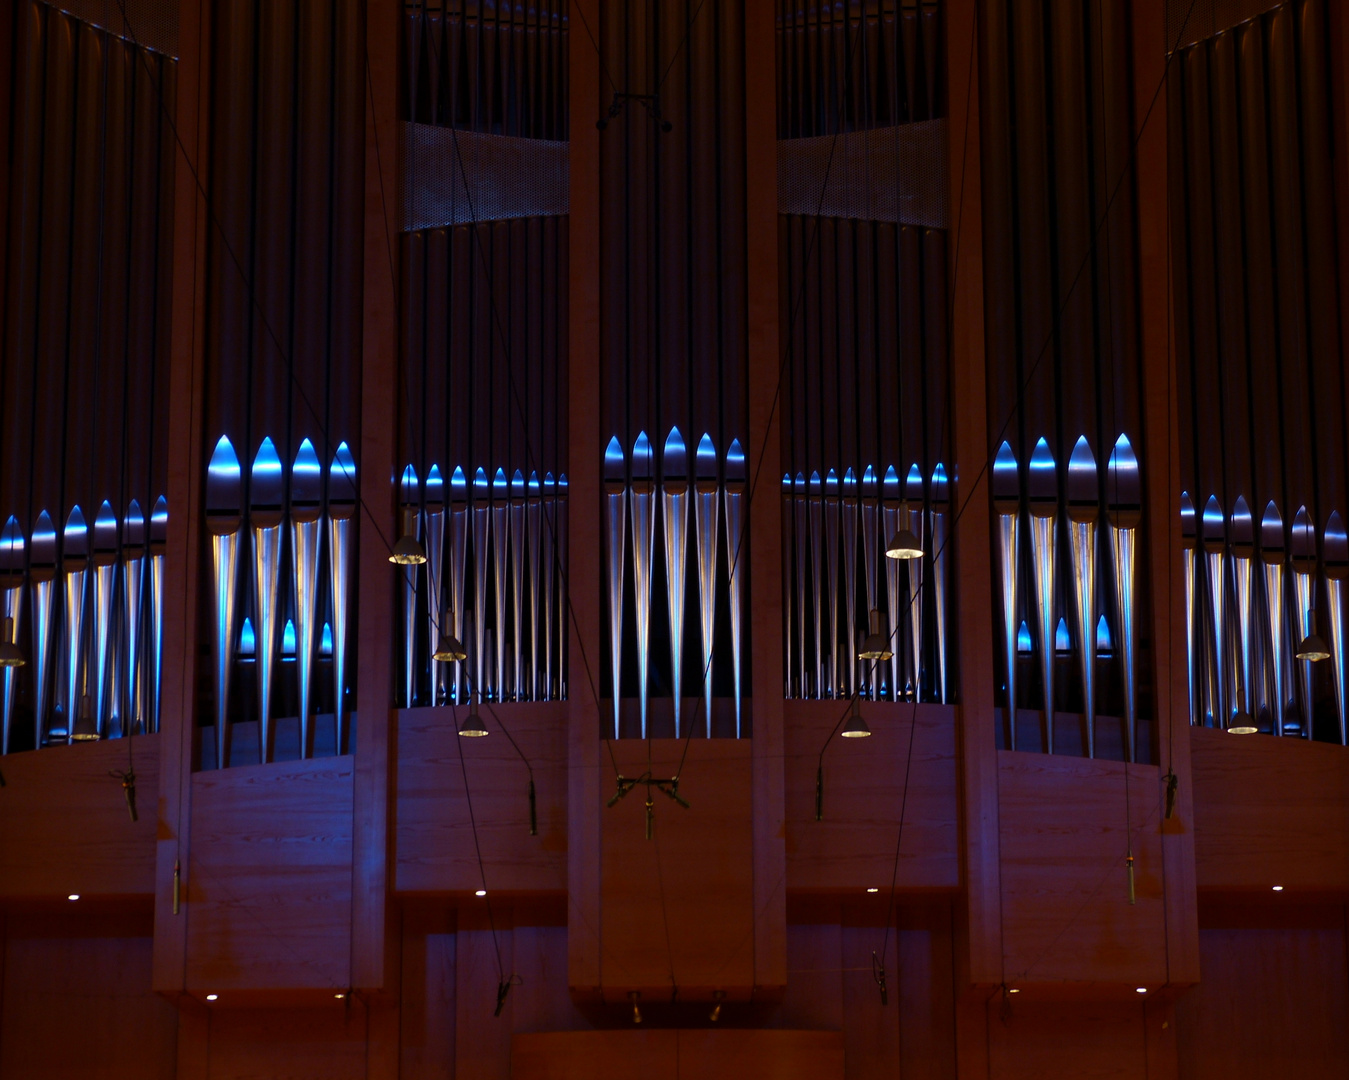 Orgel im großen Konzertsaal der Hochschule f. Musik u. Tanz, München